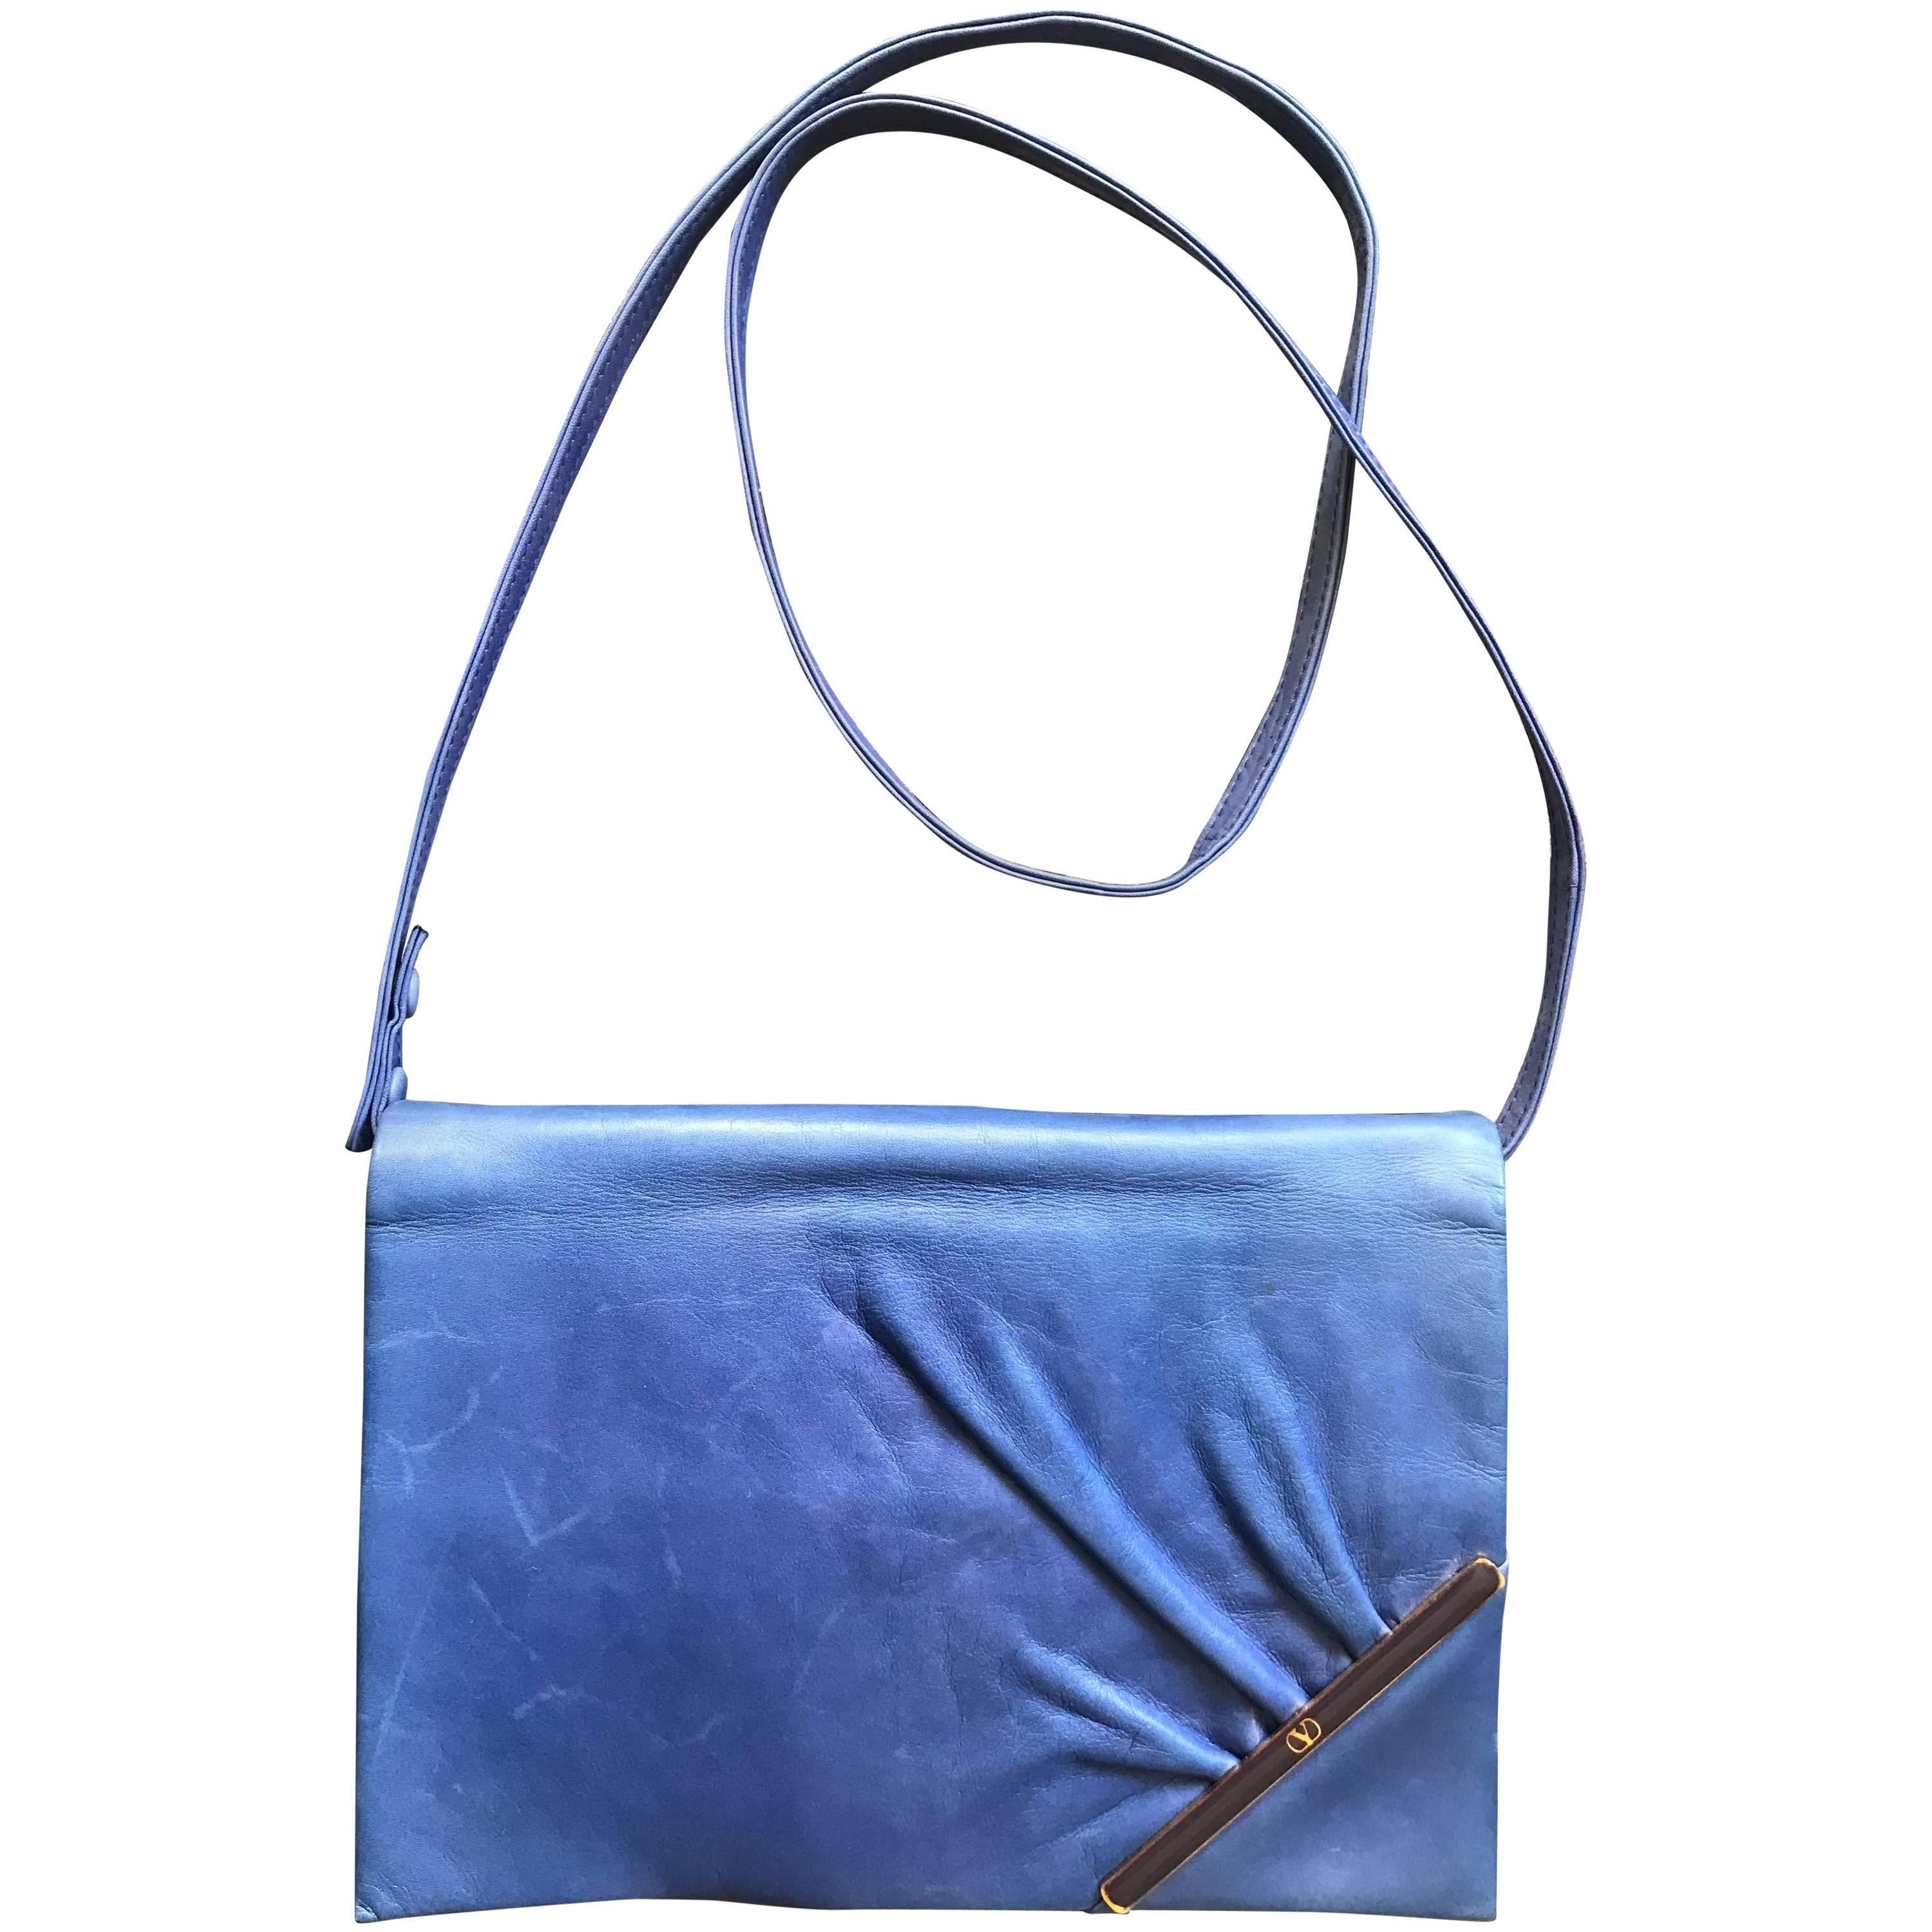 Vintage Valentino Garavani blue leather clutch shoulder bag with logo motif  For Sale